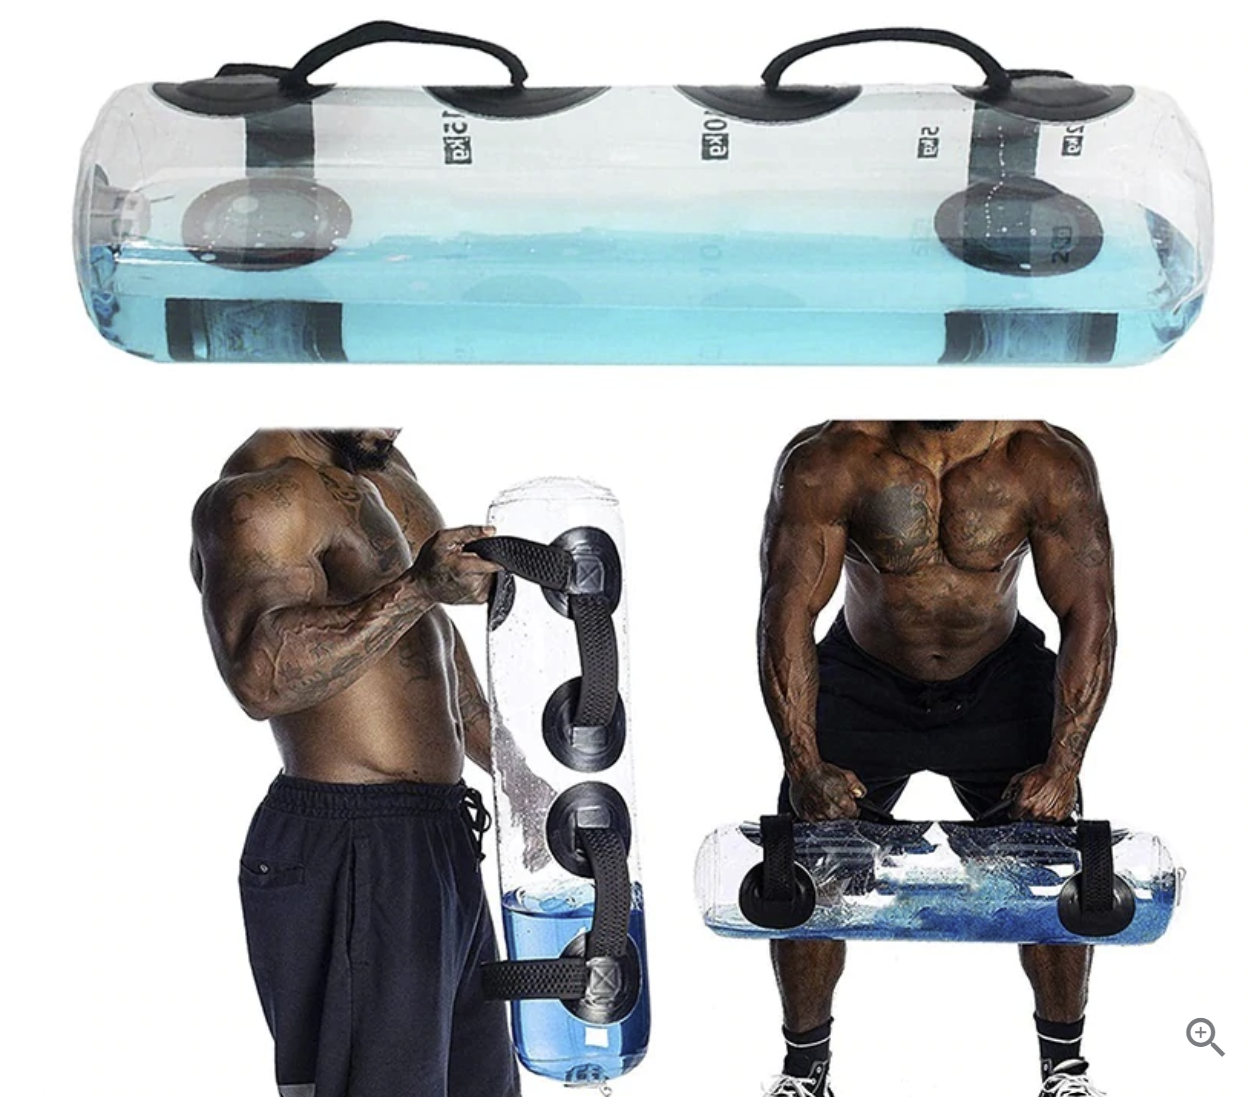 相当实用！健身爱好者看过来！Hydro Gainer™ 可调节健身水重（最高44磅），使用折扣码后半价仅售 $39.99